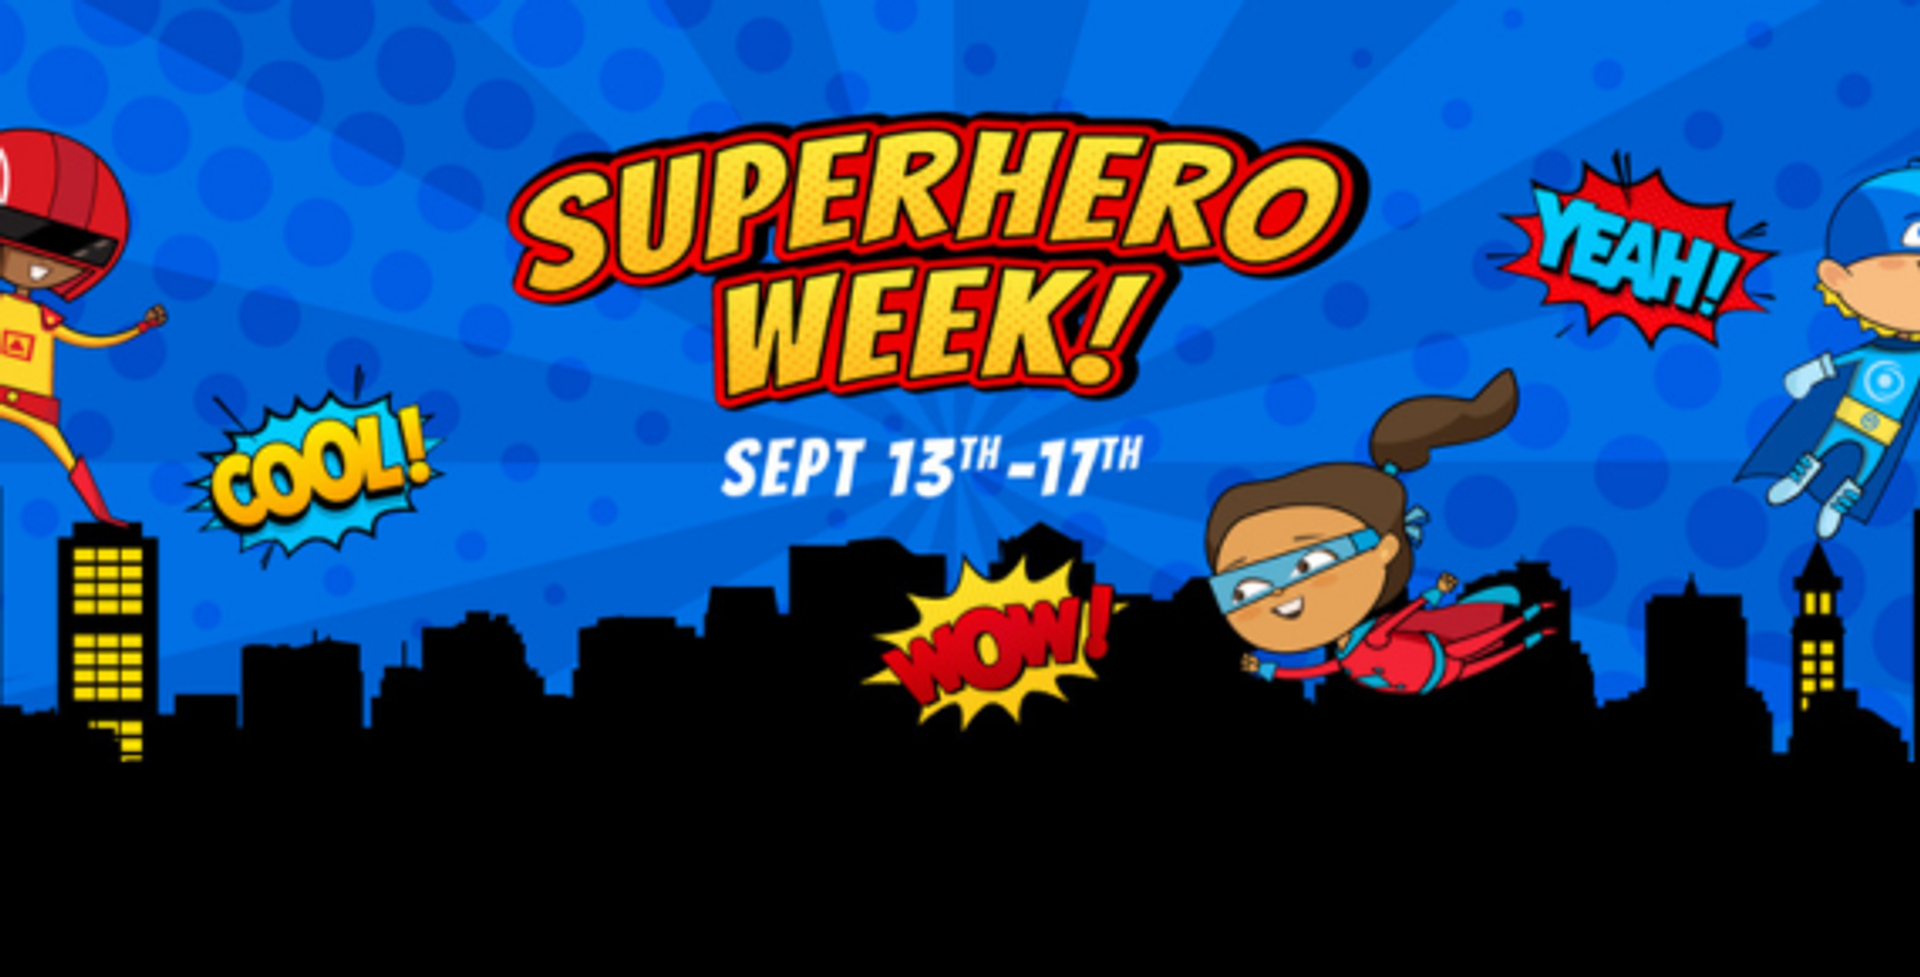 Boston Children's Museum: Superhero Week